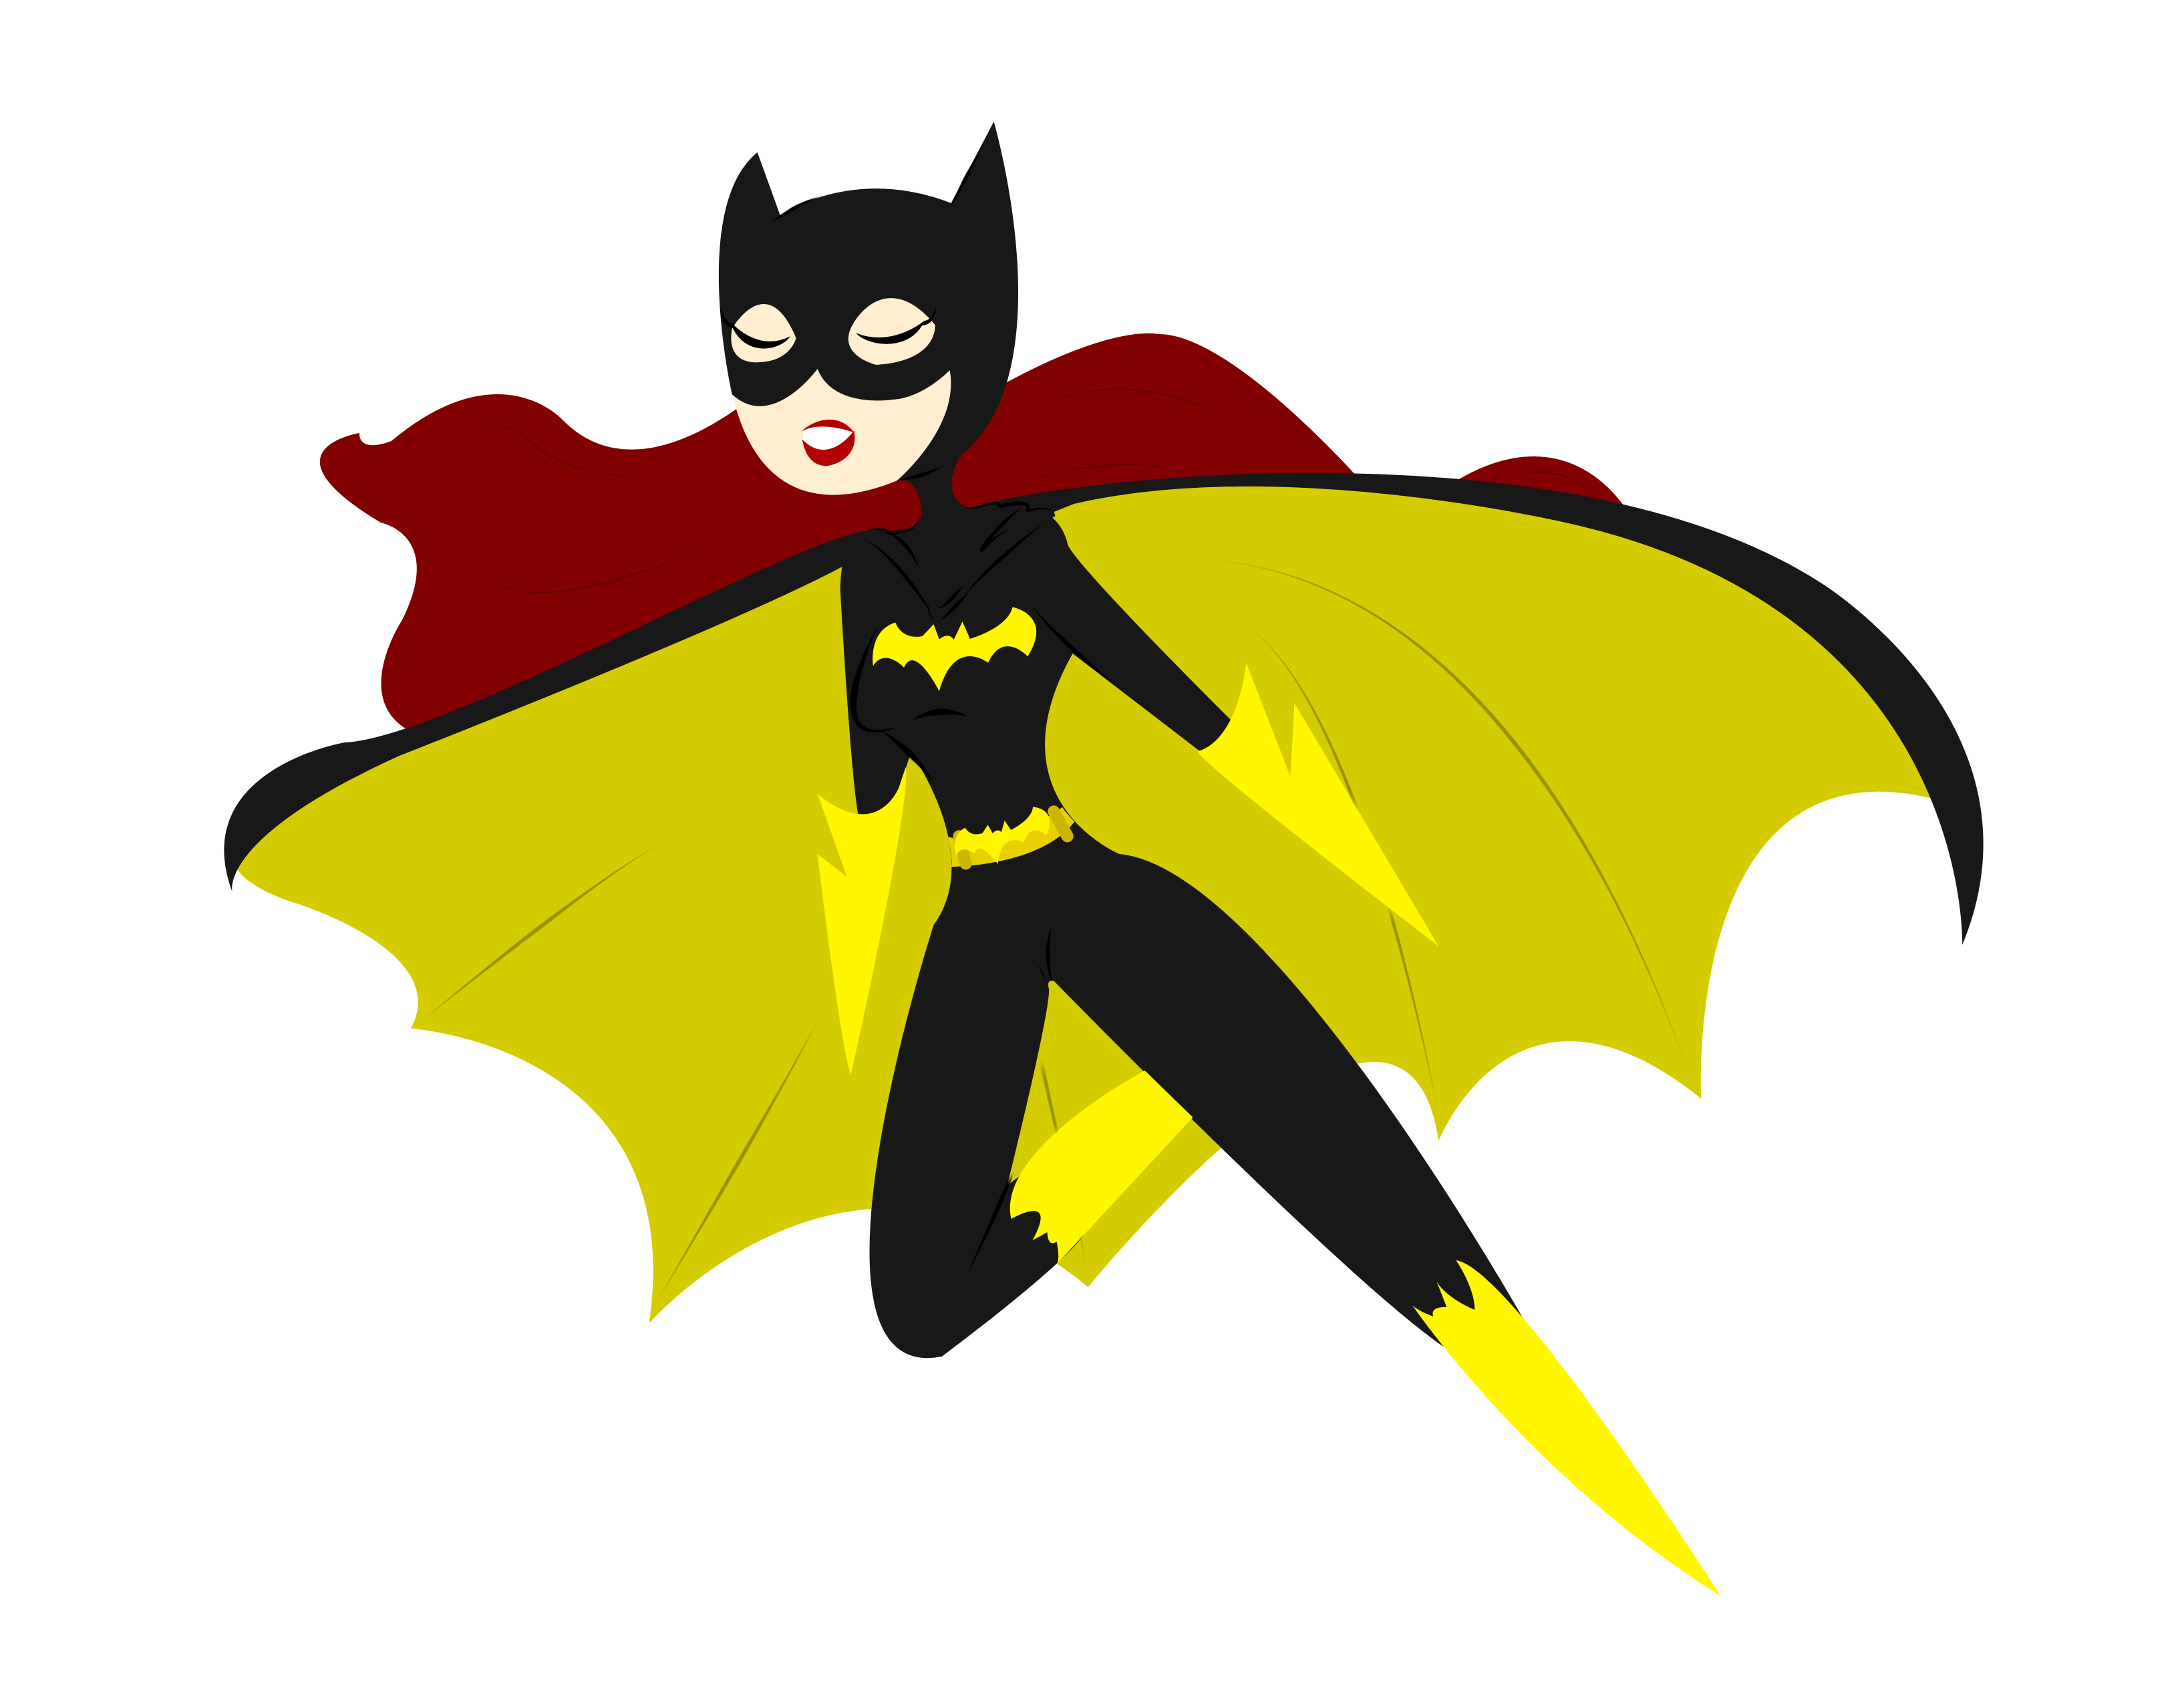 Batgirl.png